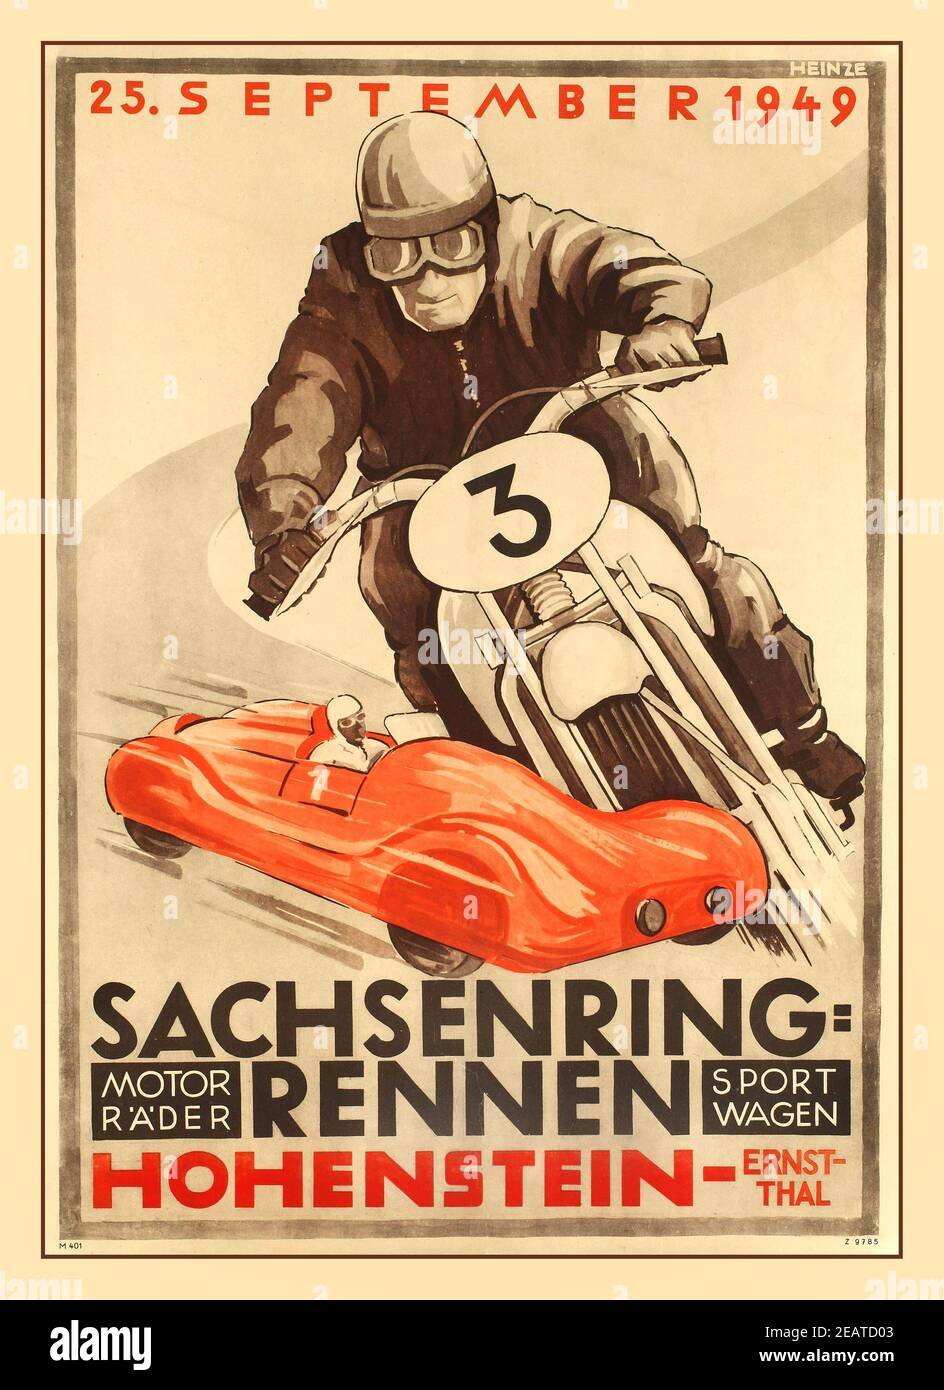 Vintage Motorcycle Racing Poster eventi sportivi 1940 il circuito automobilistico Sachsenring si trova a Hohenstein-Ernstthal, nei pressi di Chemnitz, in Sassonia, Germania. Ospita l'annuale Gran Premio della motocicletta tedesca del campionato mondiale di gare motociclistiche FIM Grand Prix. Sachsenring-rennen Hohenstein Ernstthal, poster originale stampato in Germania 1949 artista Heinze Foto Stock